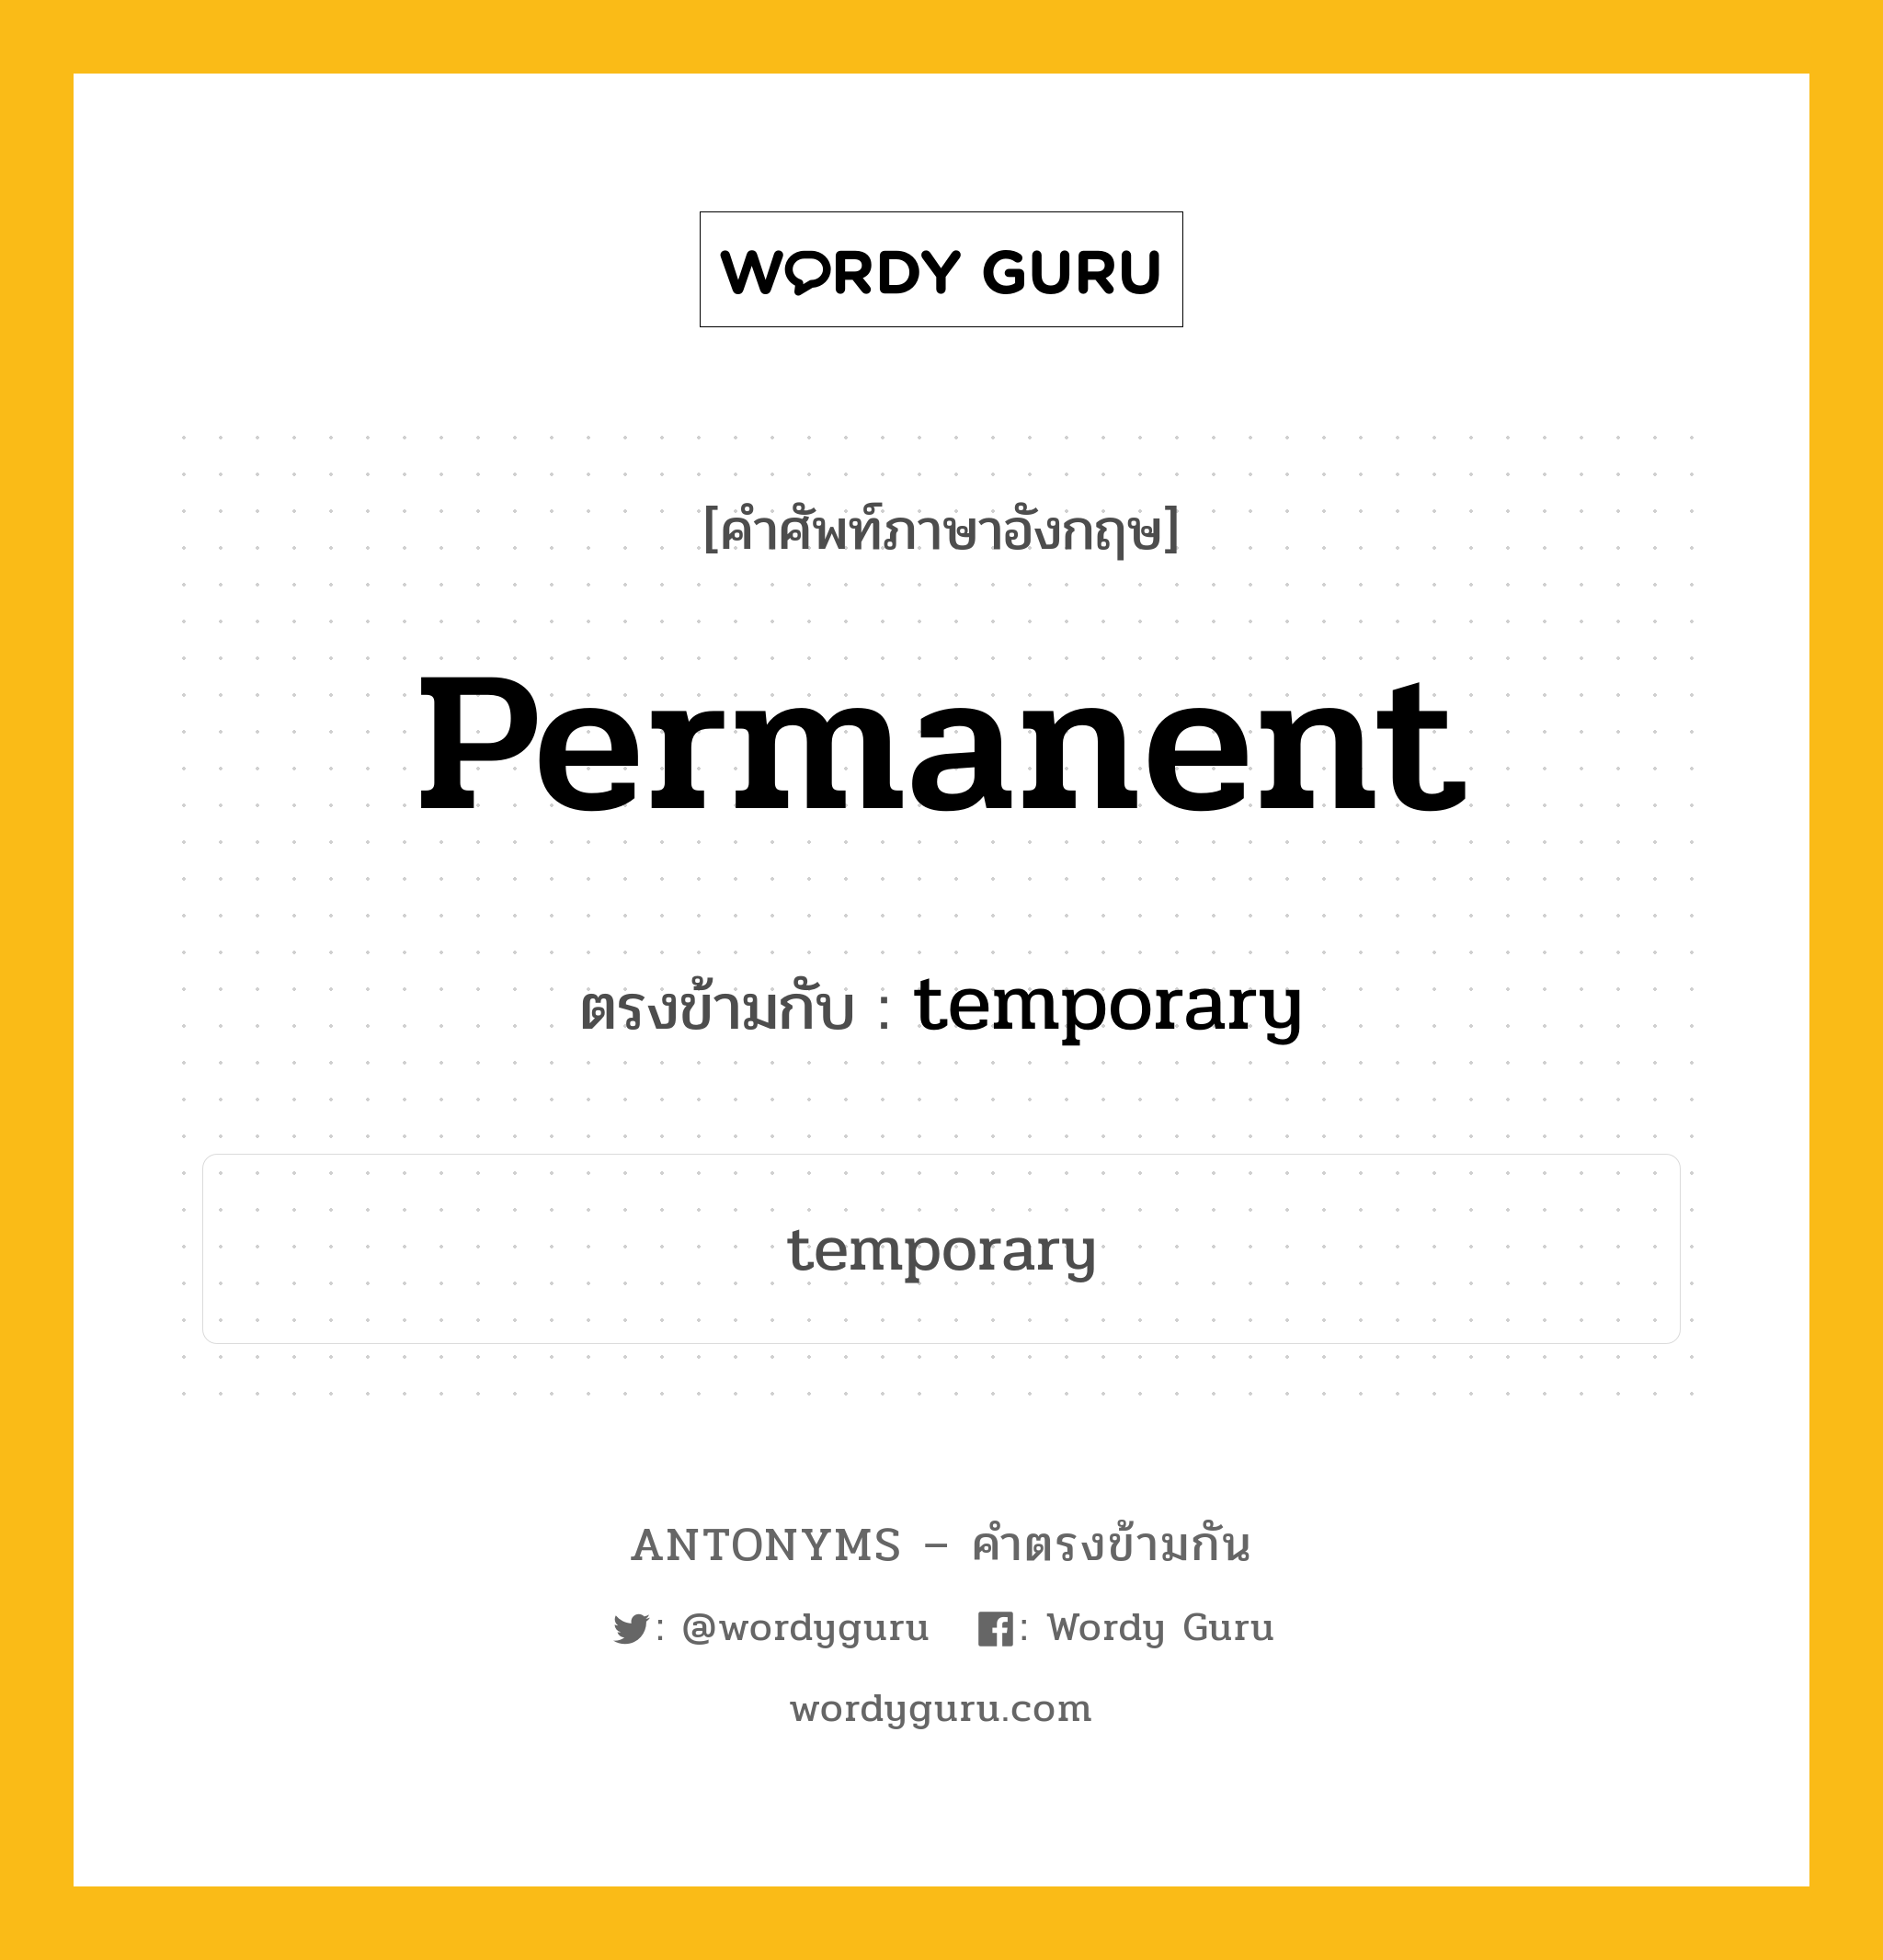 permanent เป็นคำตรงข้ามกับคำไหนบ้าง?, คำศัพท์ภาษาอังกฤษ permanent ตรงข้ามกับ temporary หมวด temporary